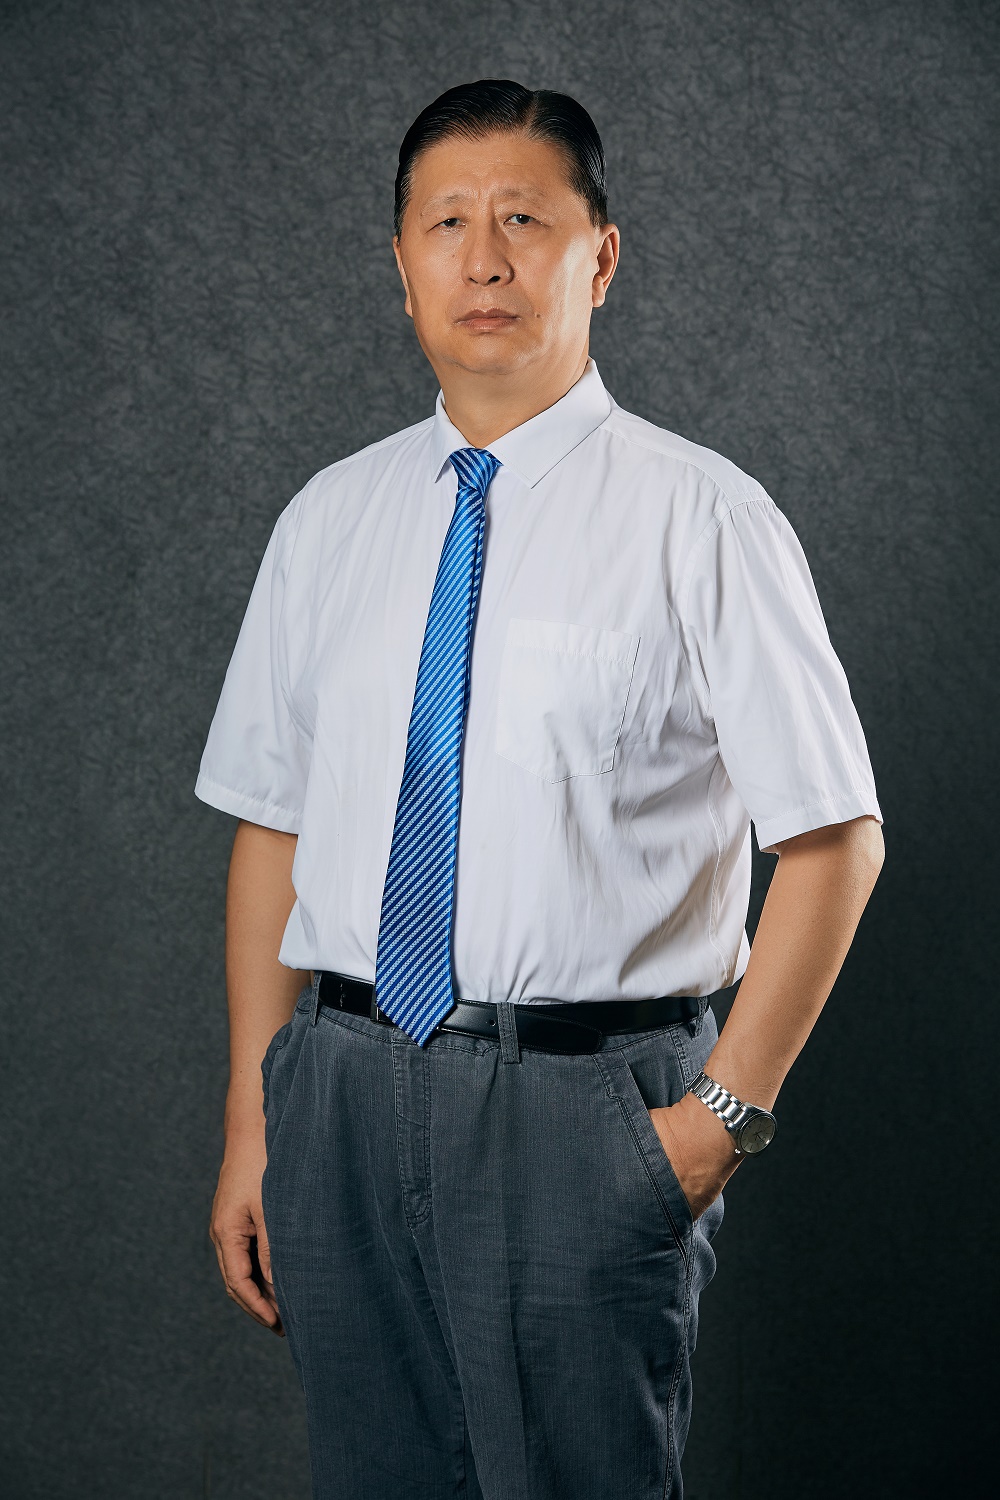 王健教授